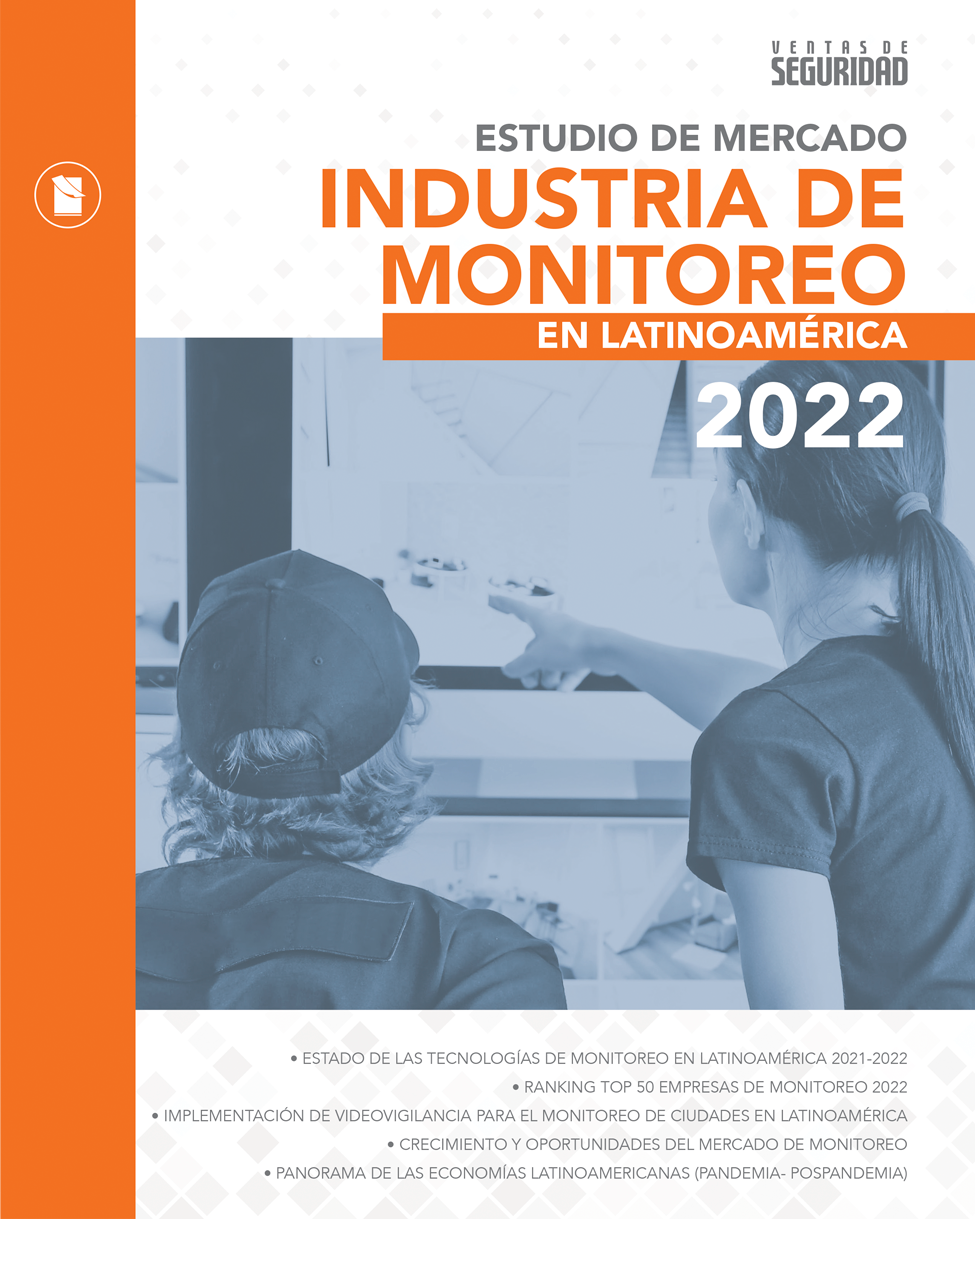 ESTUDIO DE MERCADO INDUSTRIA DE MONITOREO • 2022 Image